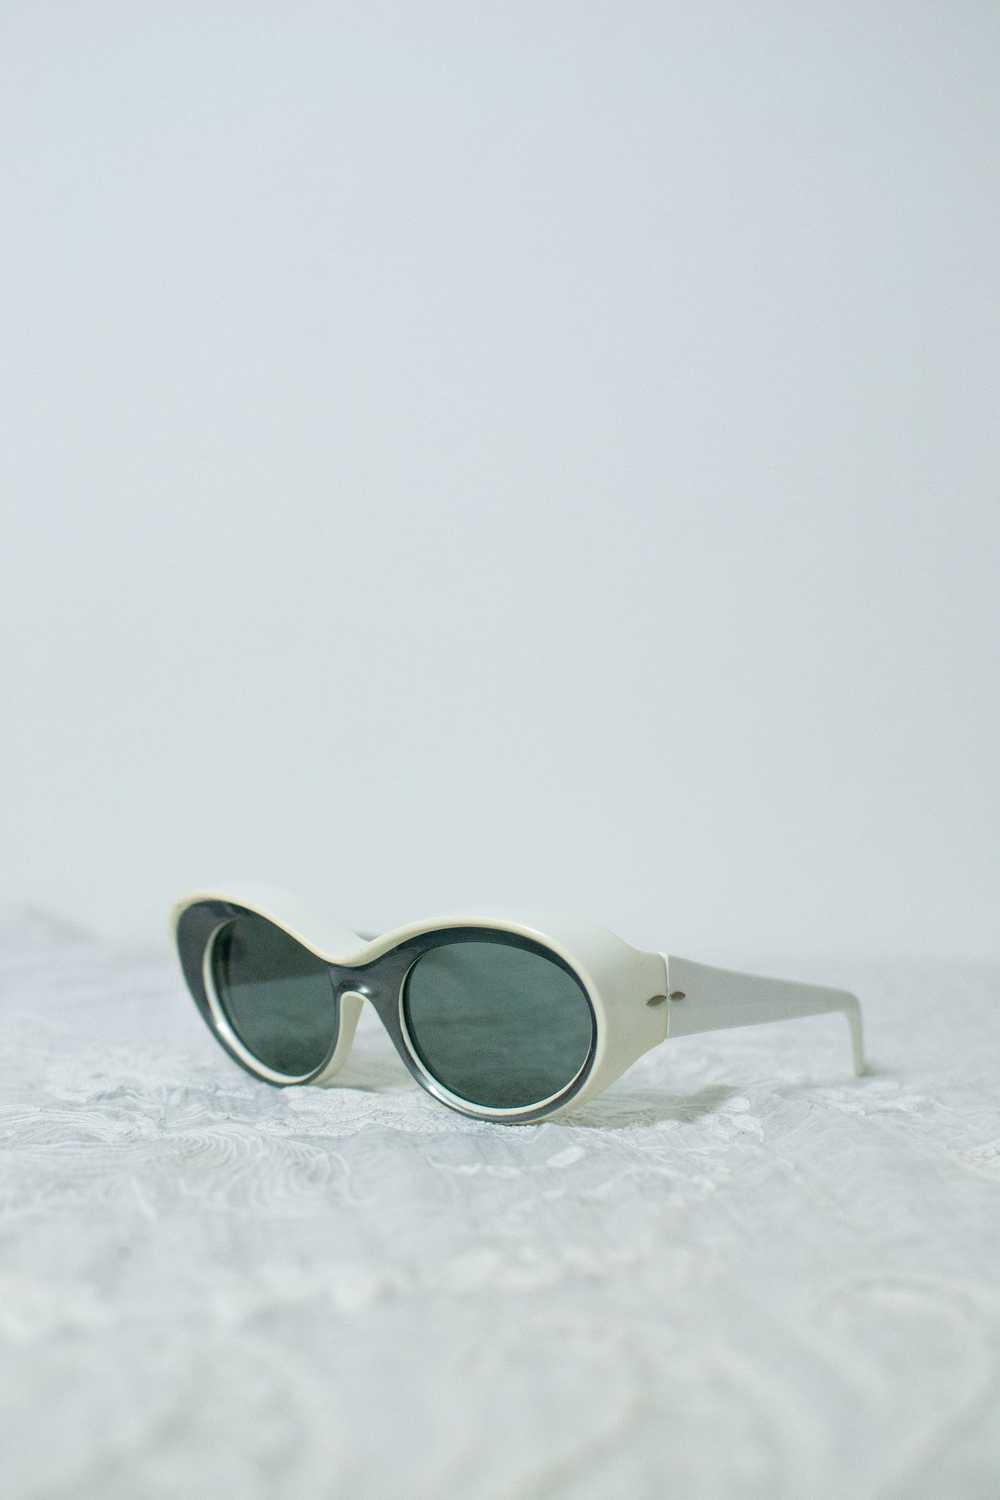 1960s Black & White Sunglasses | Foster Grant - image 5